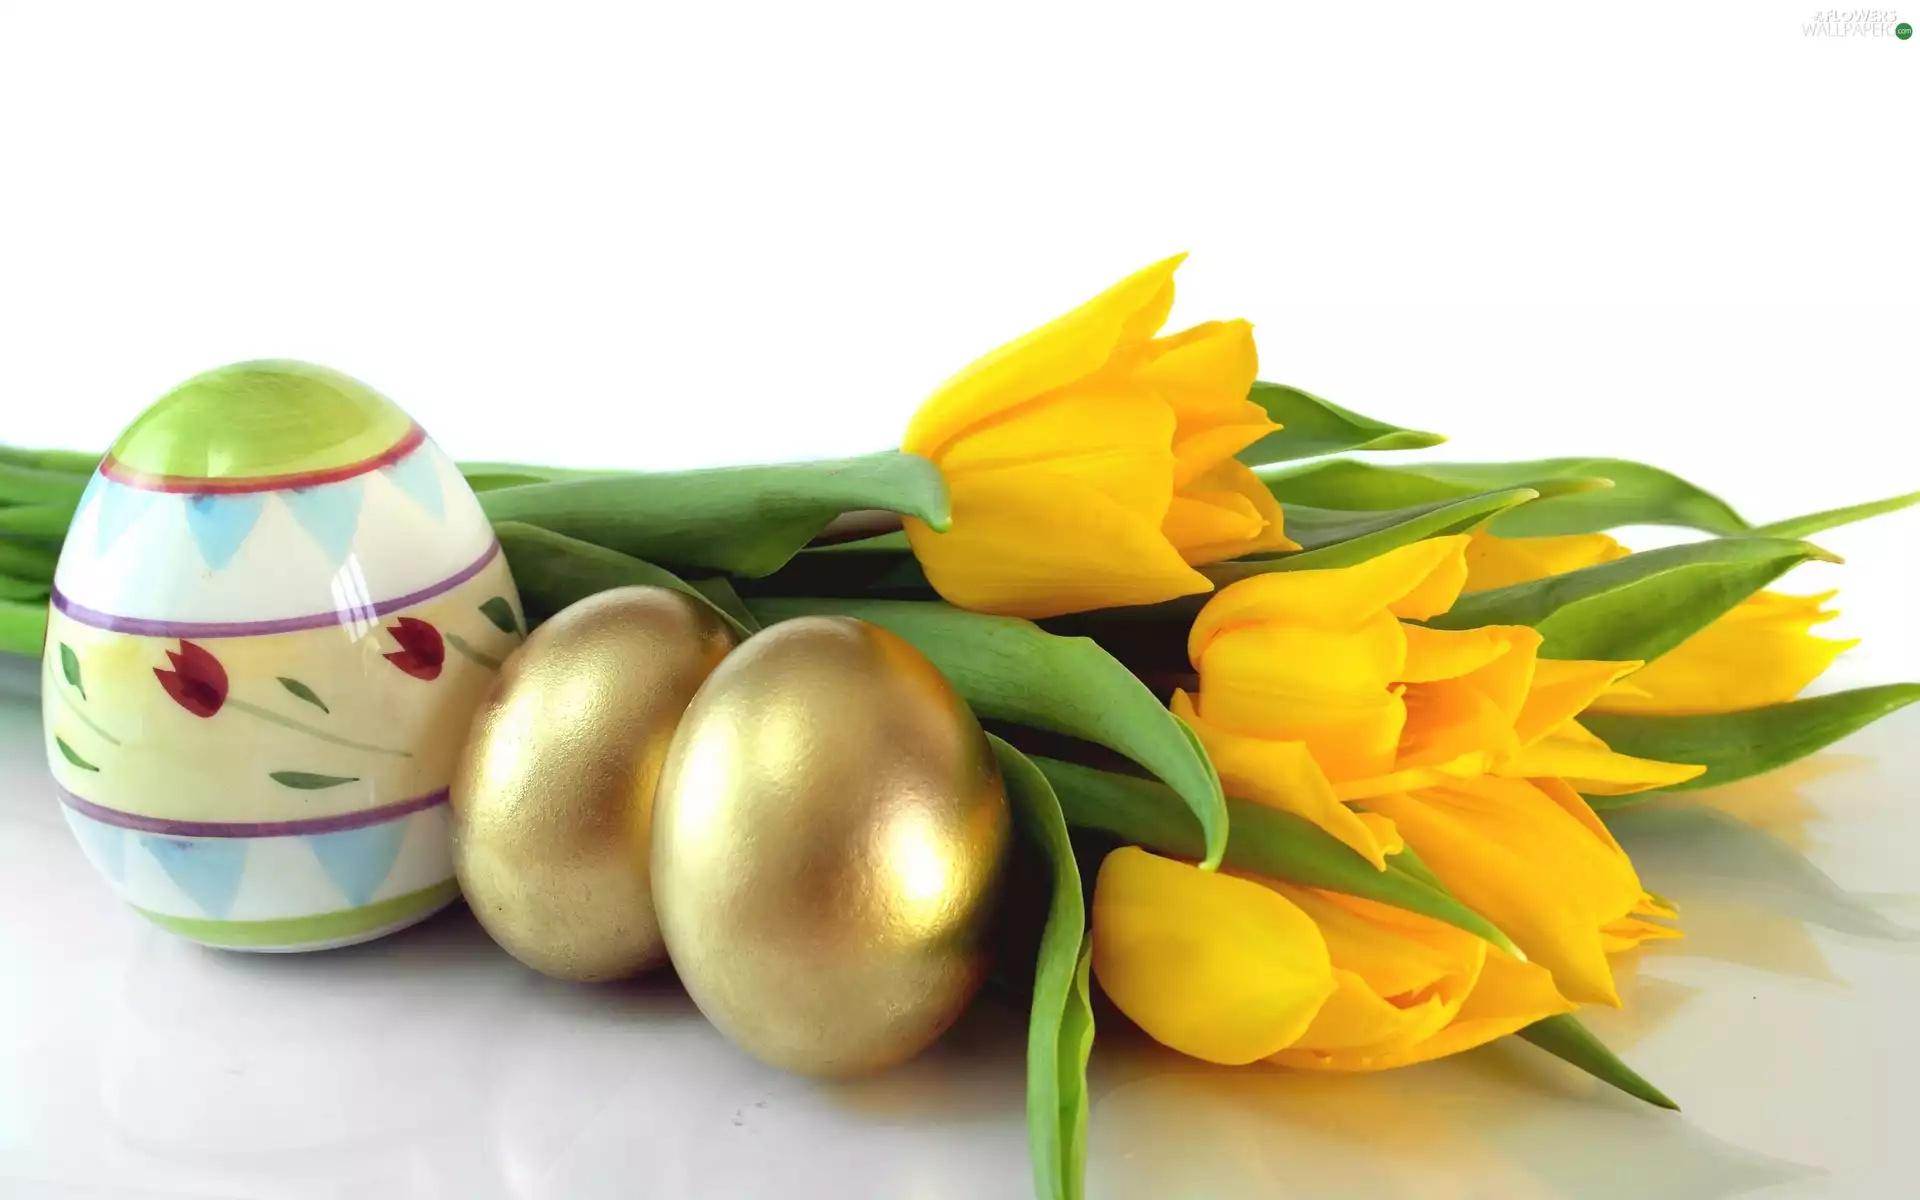 Tulips, Flowers, easter, eggs, eggs